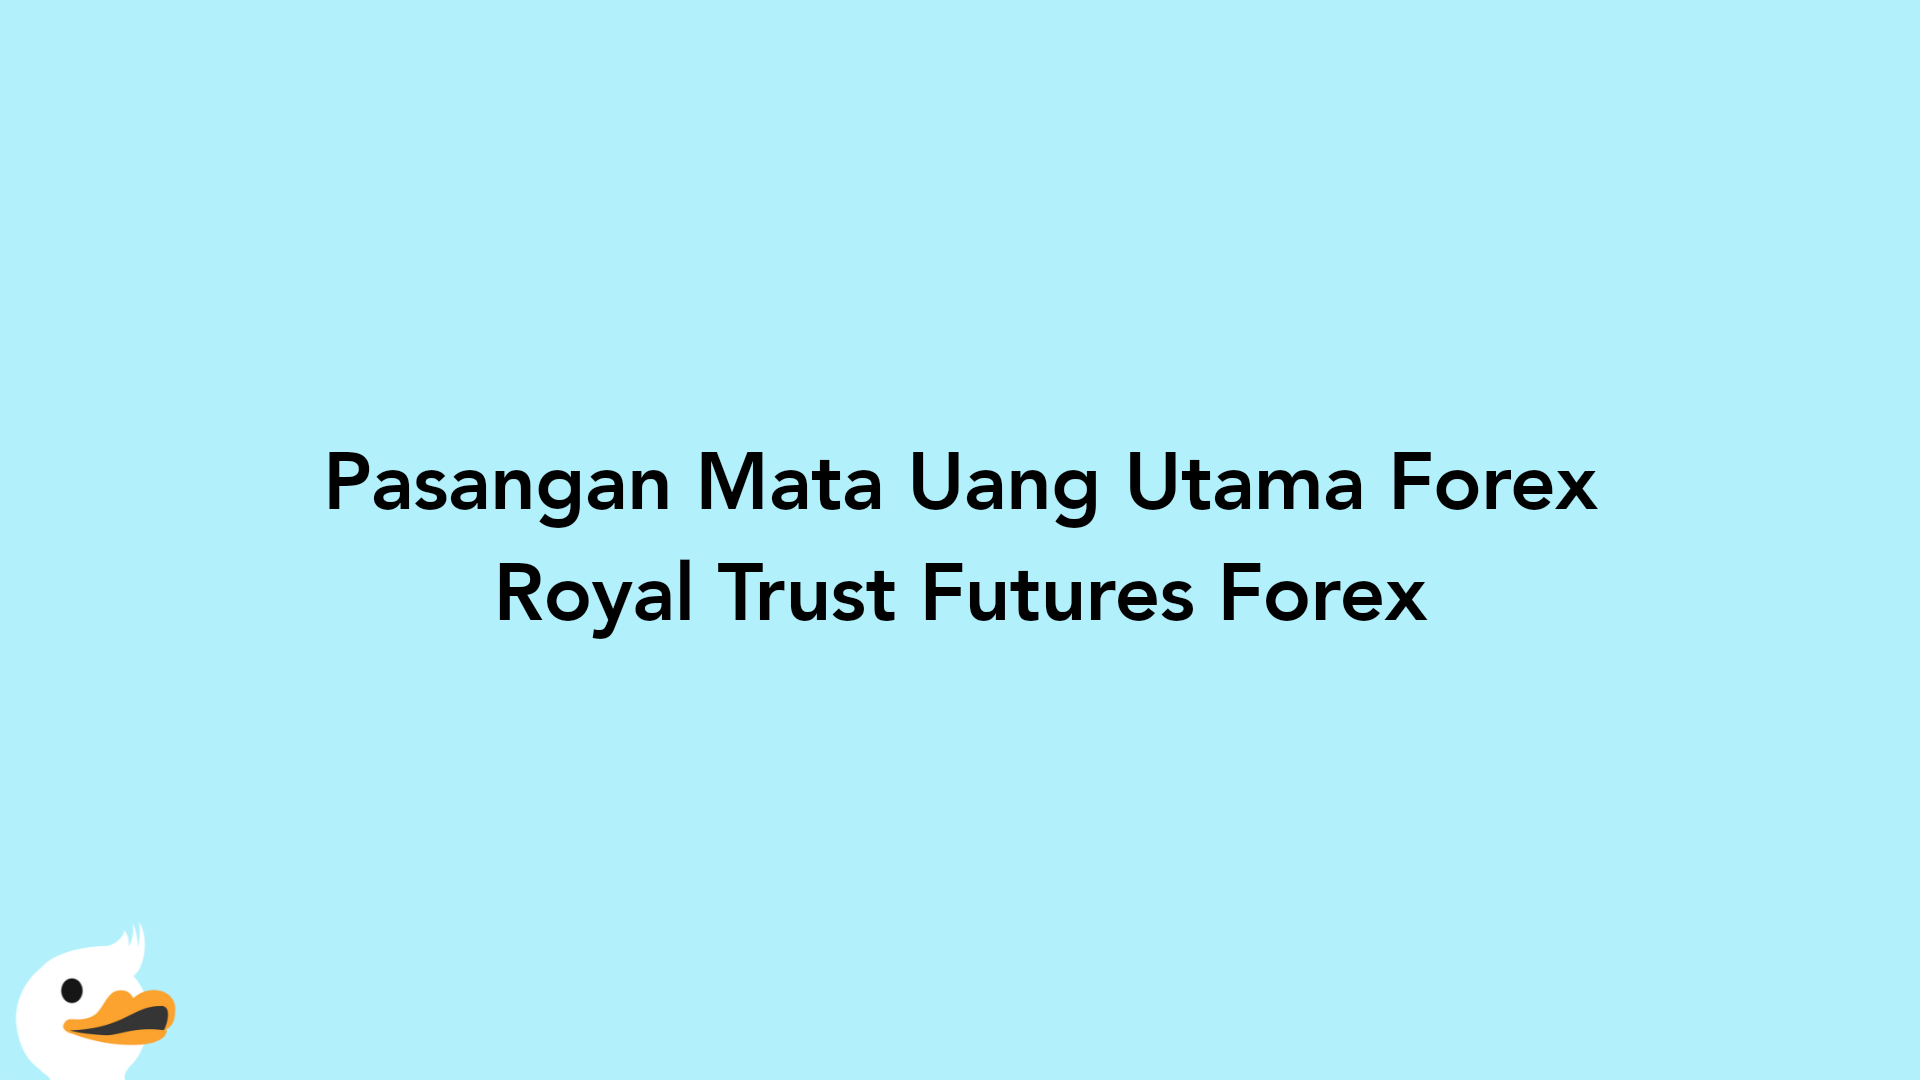 Pasangan Mata Uang Utama Forex Royal Trust Futures Forex